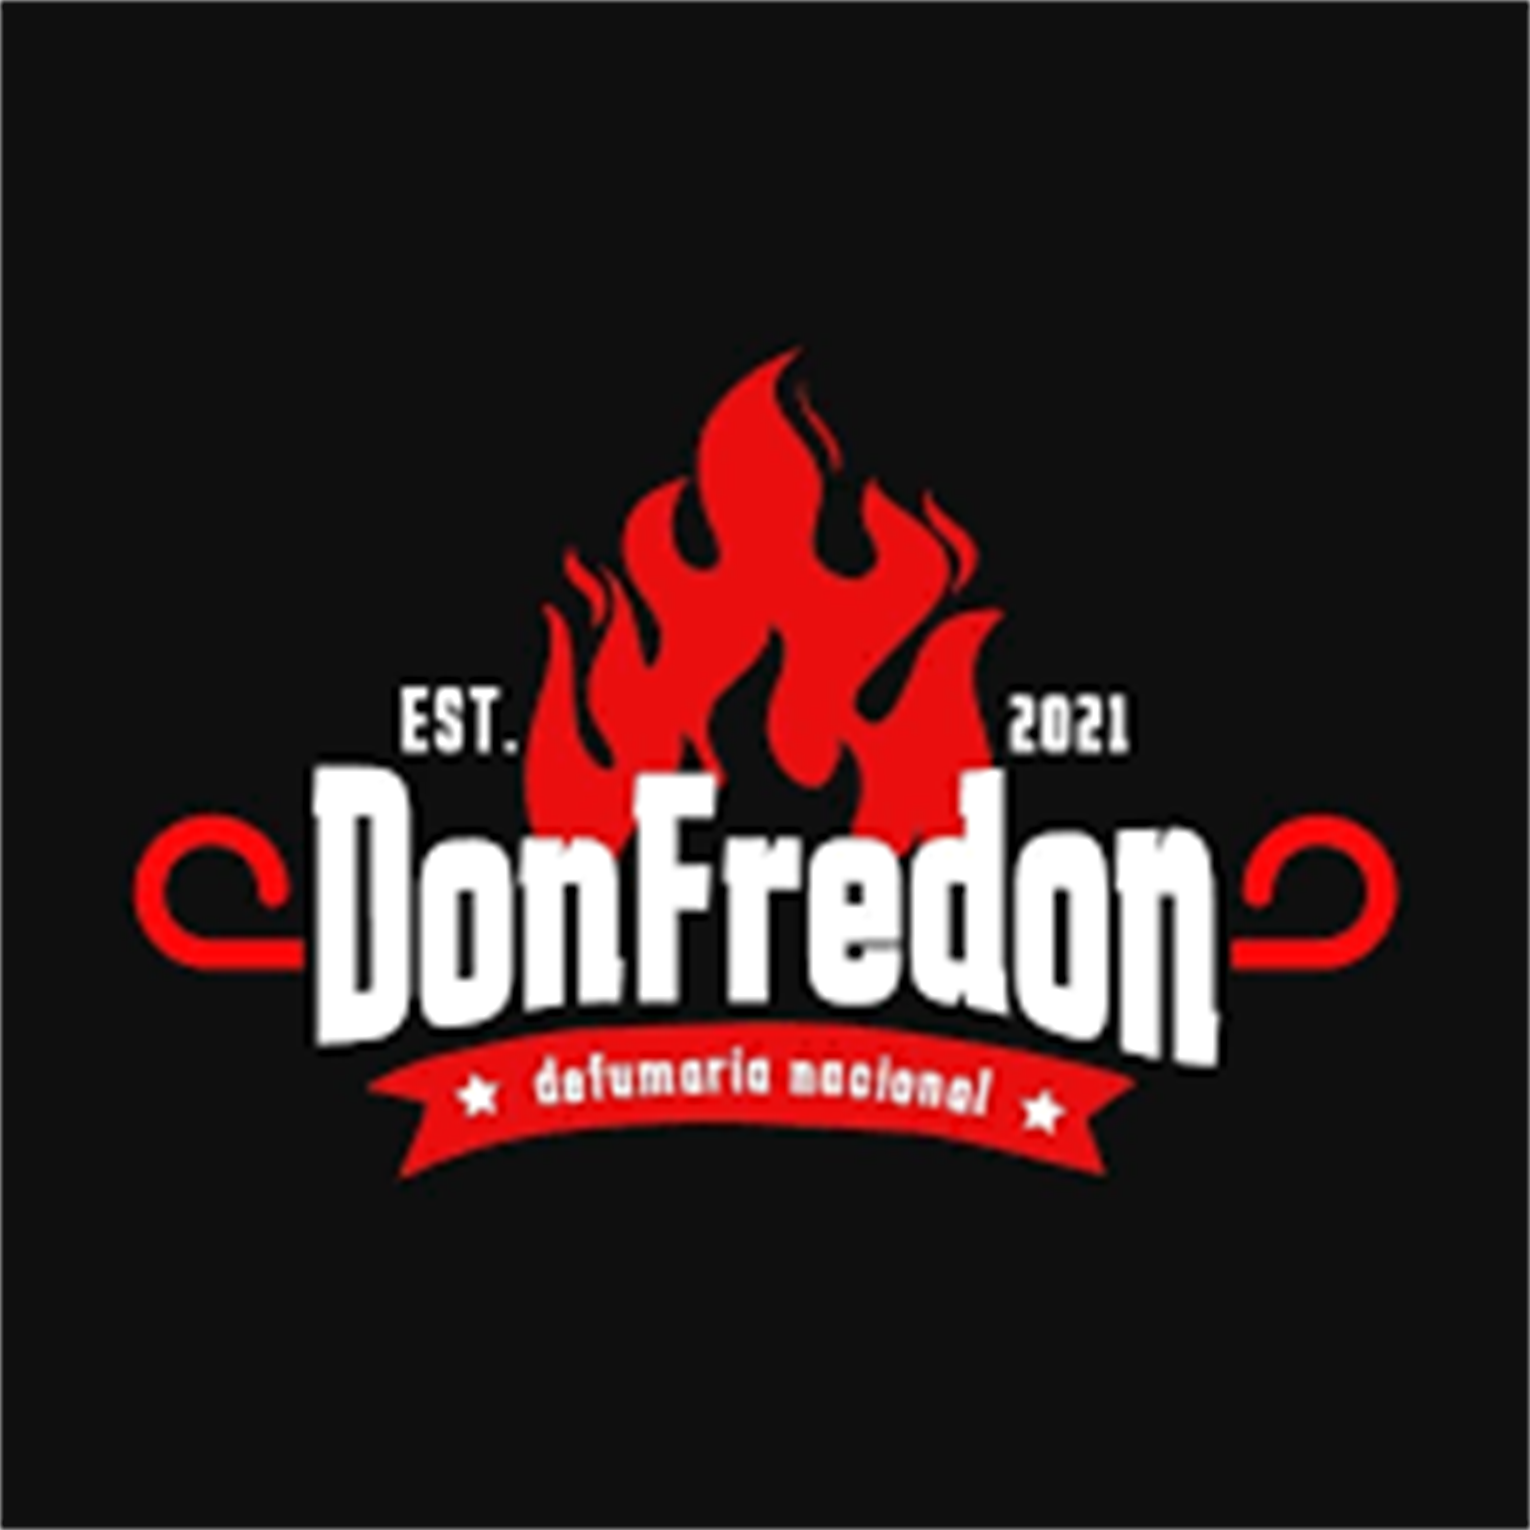 Don Fredon Defumaria